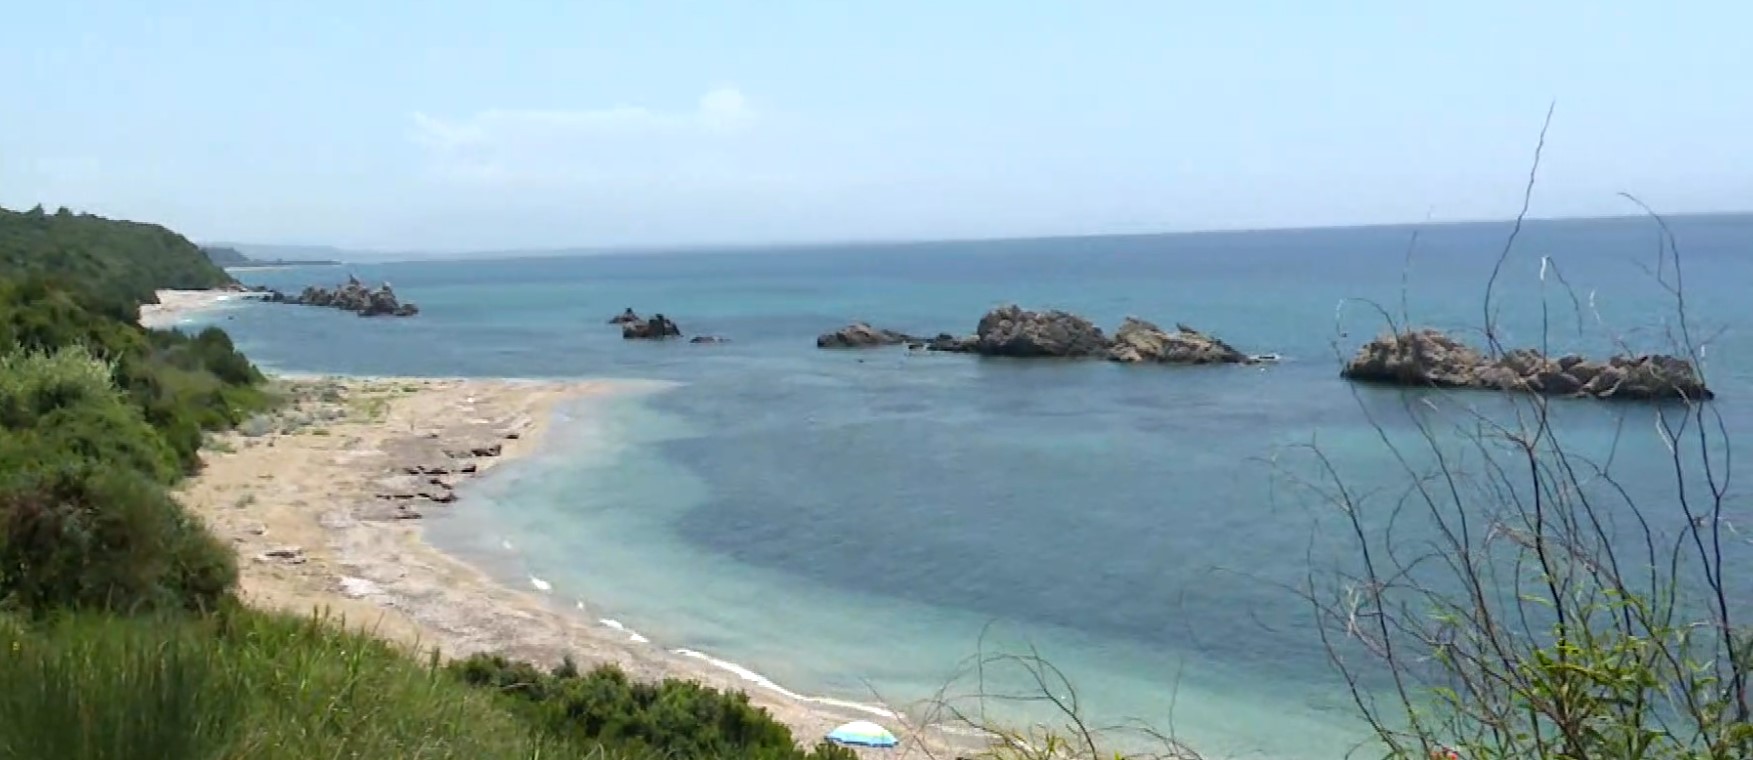 Αρτολίθια Πρέβεζας: Μια απόμερη και παρθένα παραλία